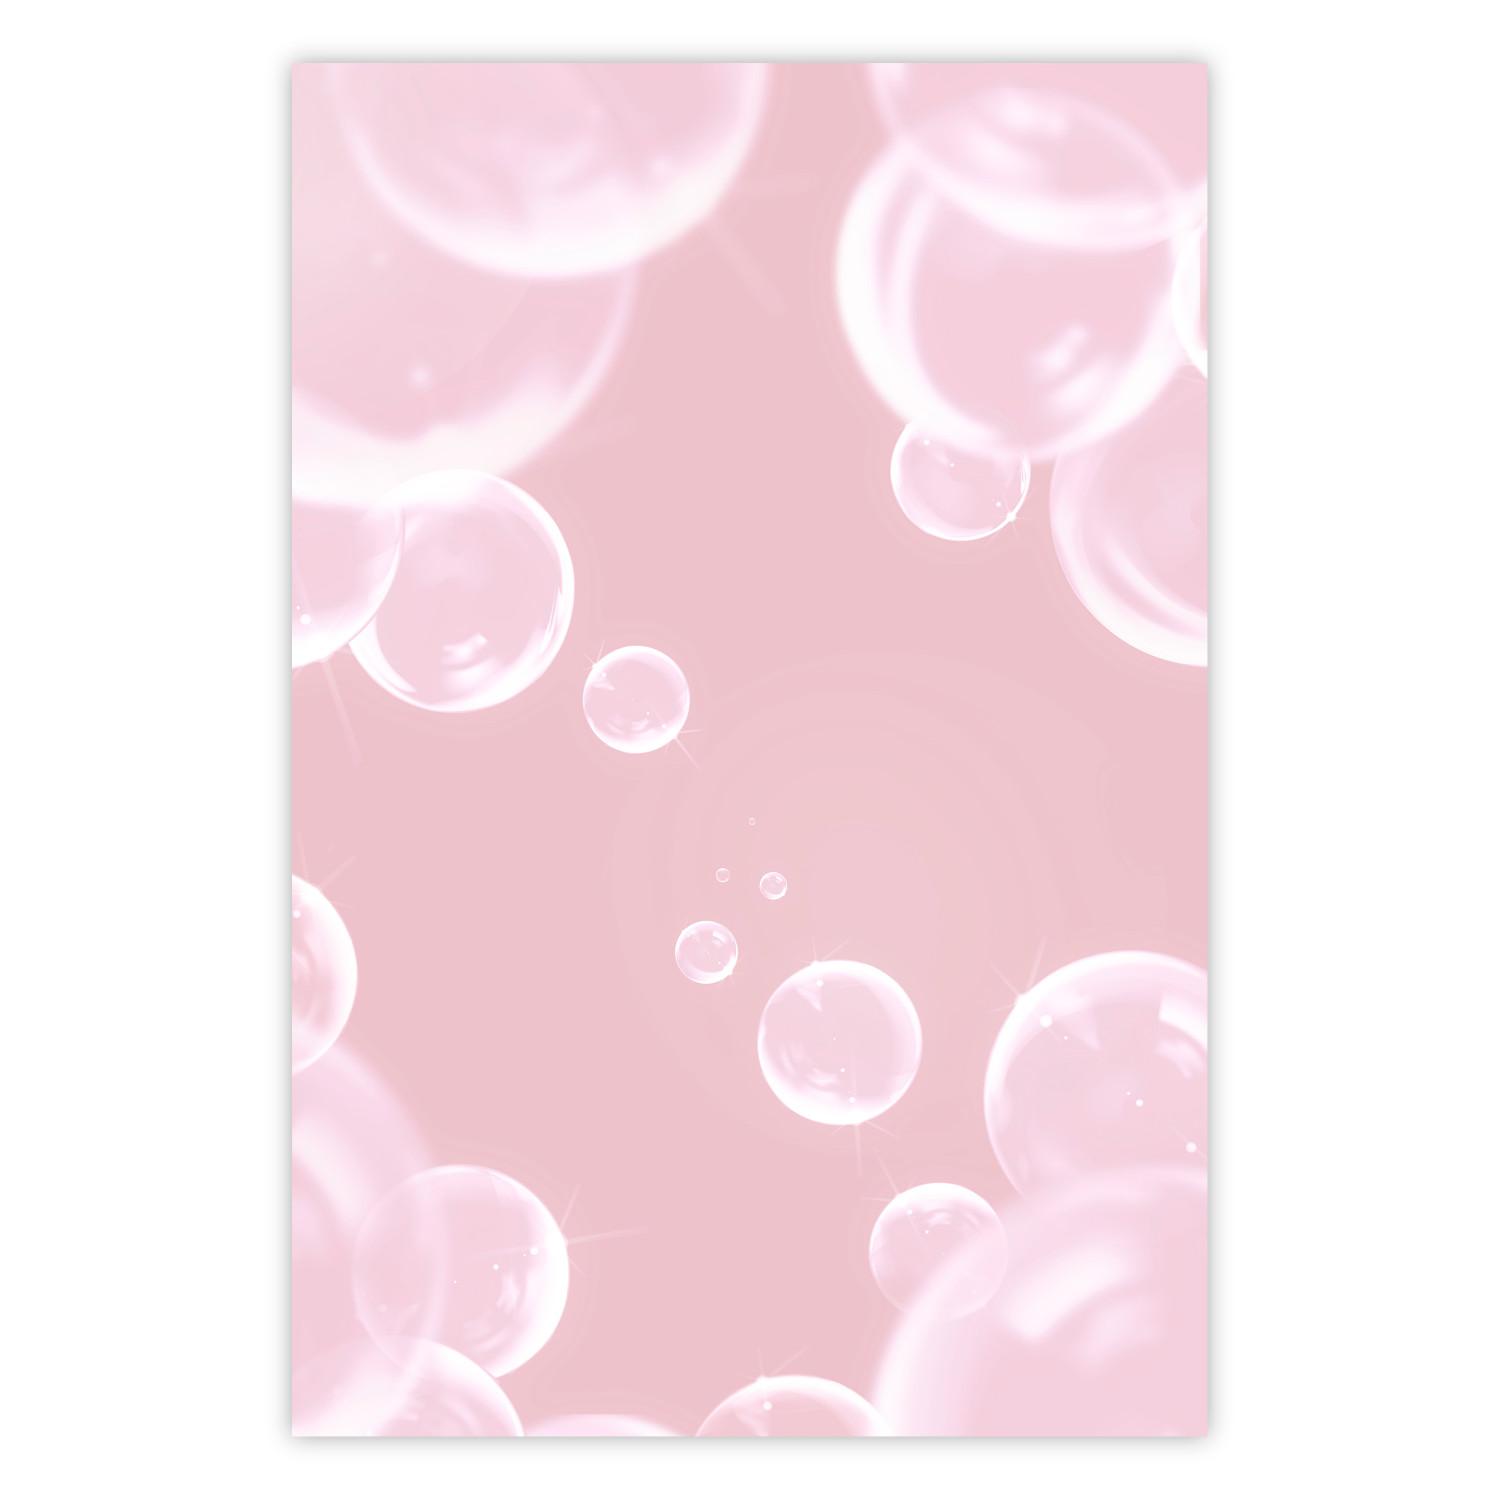 Póster Sutil soplo - burbujas de jabón brillantes volando sobre fondo rosa